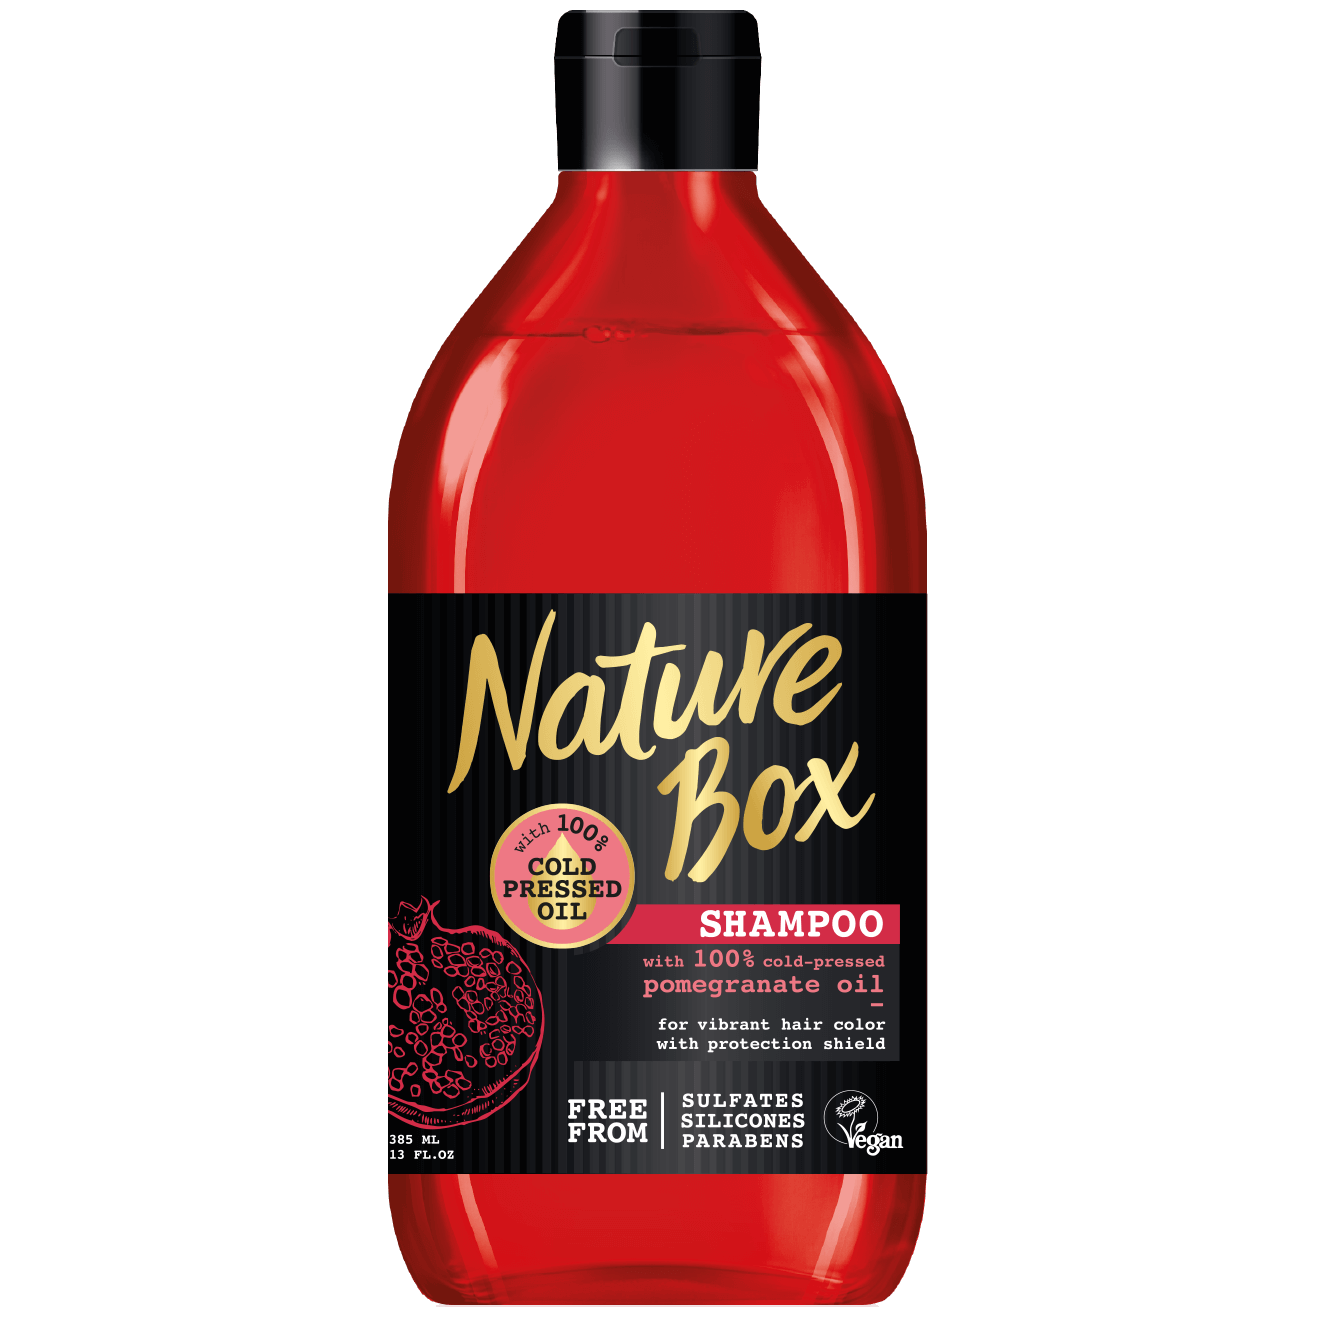 nature box szampon czerwony